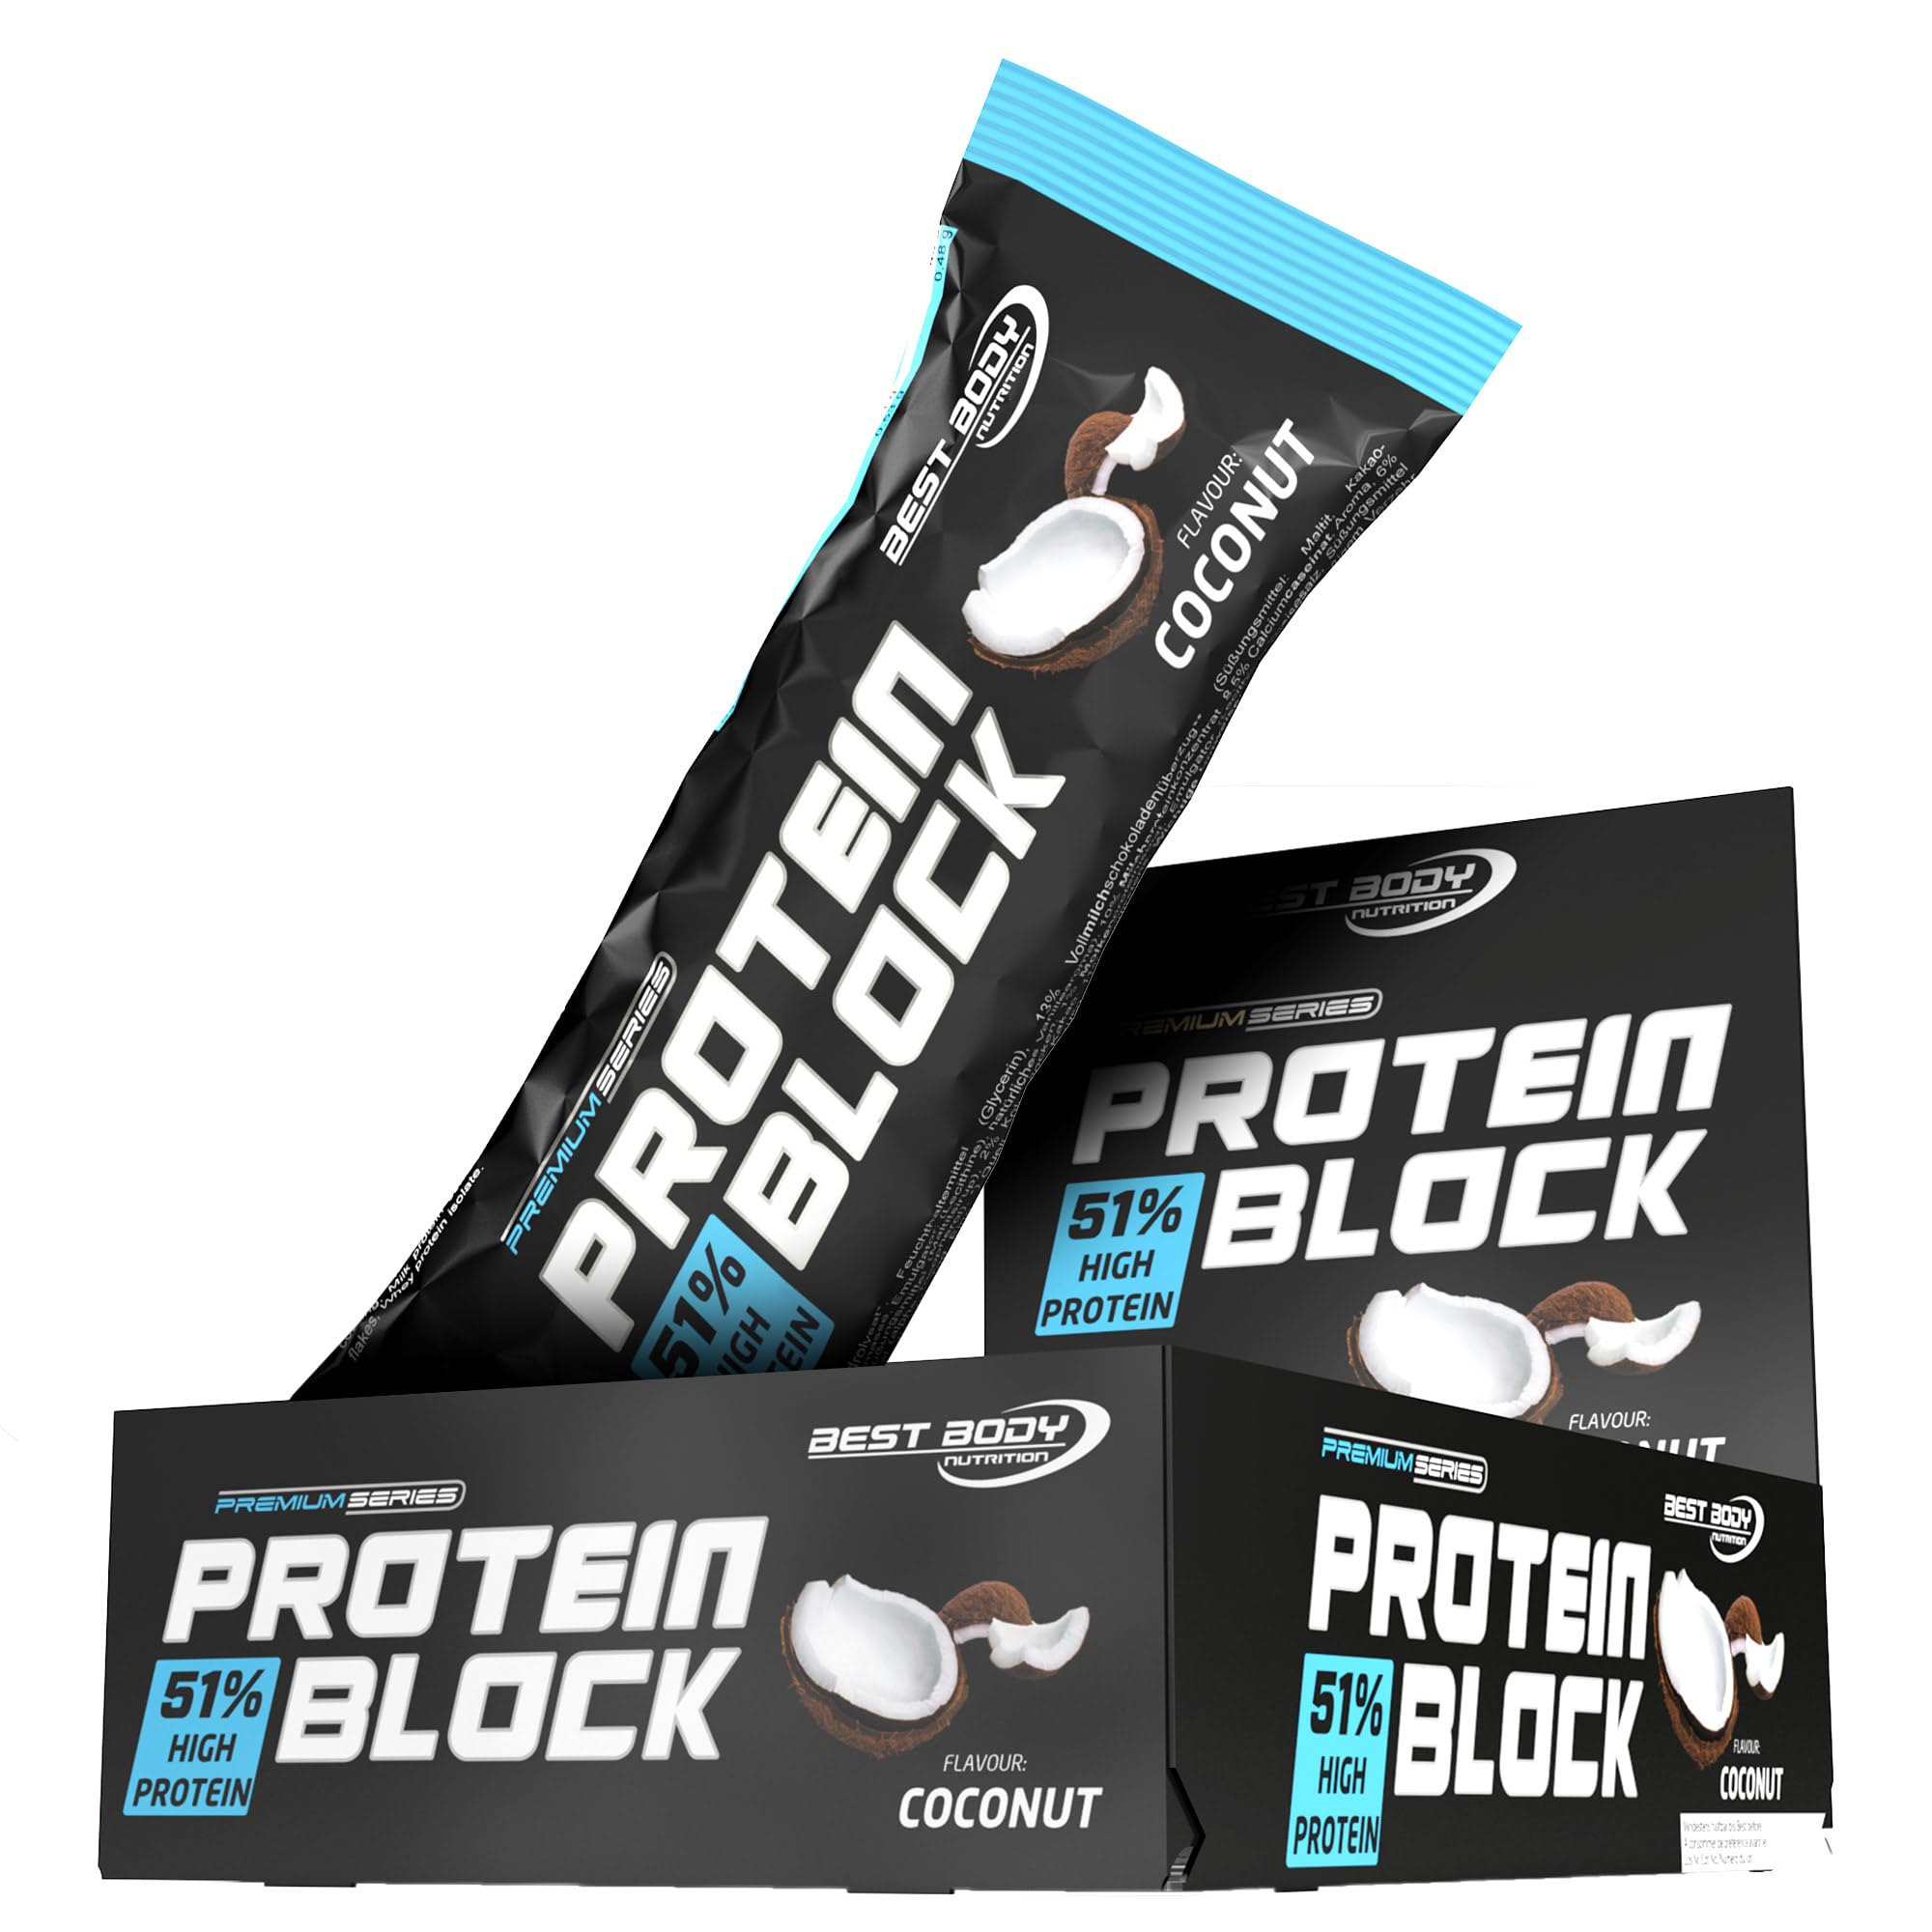 Best Body Nutrition Protein Block, Coconut, 51% Protein pro Riegel, 15 x 90 g Riegel pro Karton, 1.3 kg